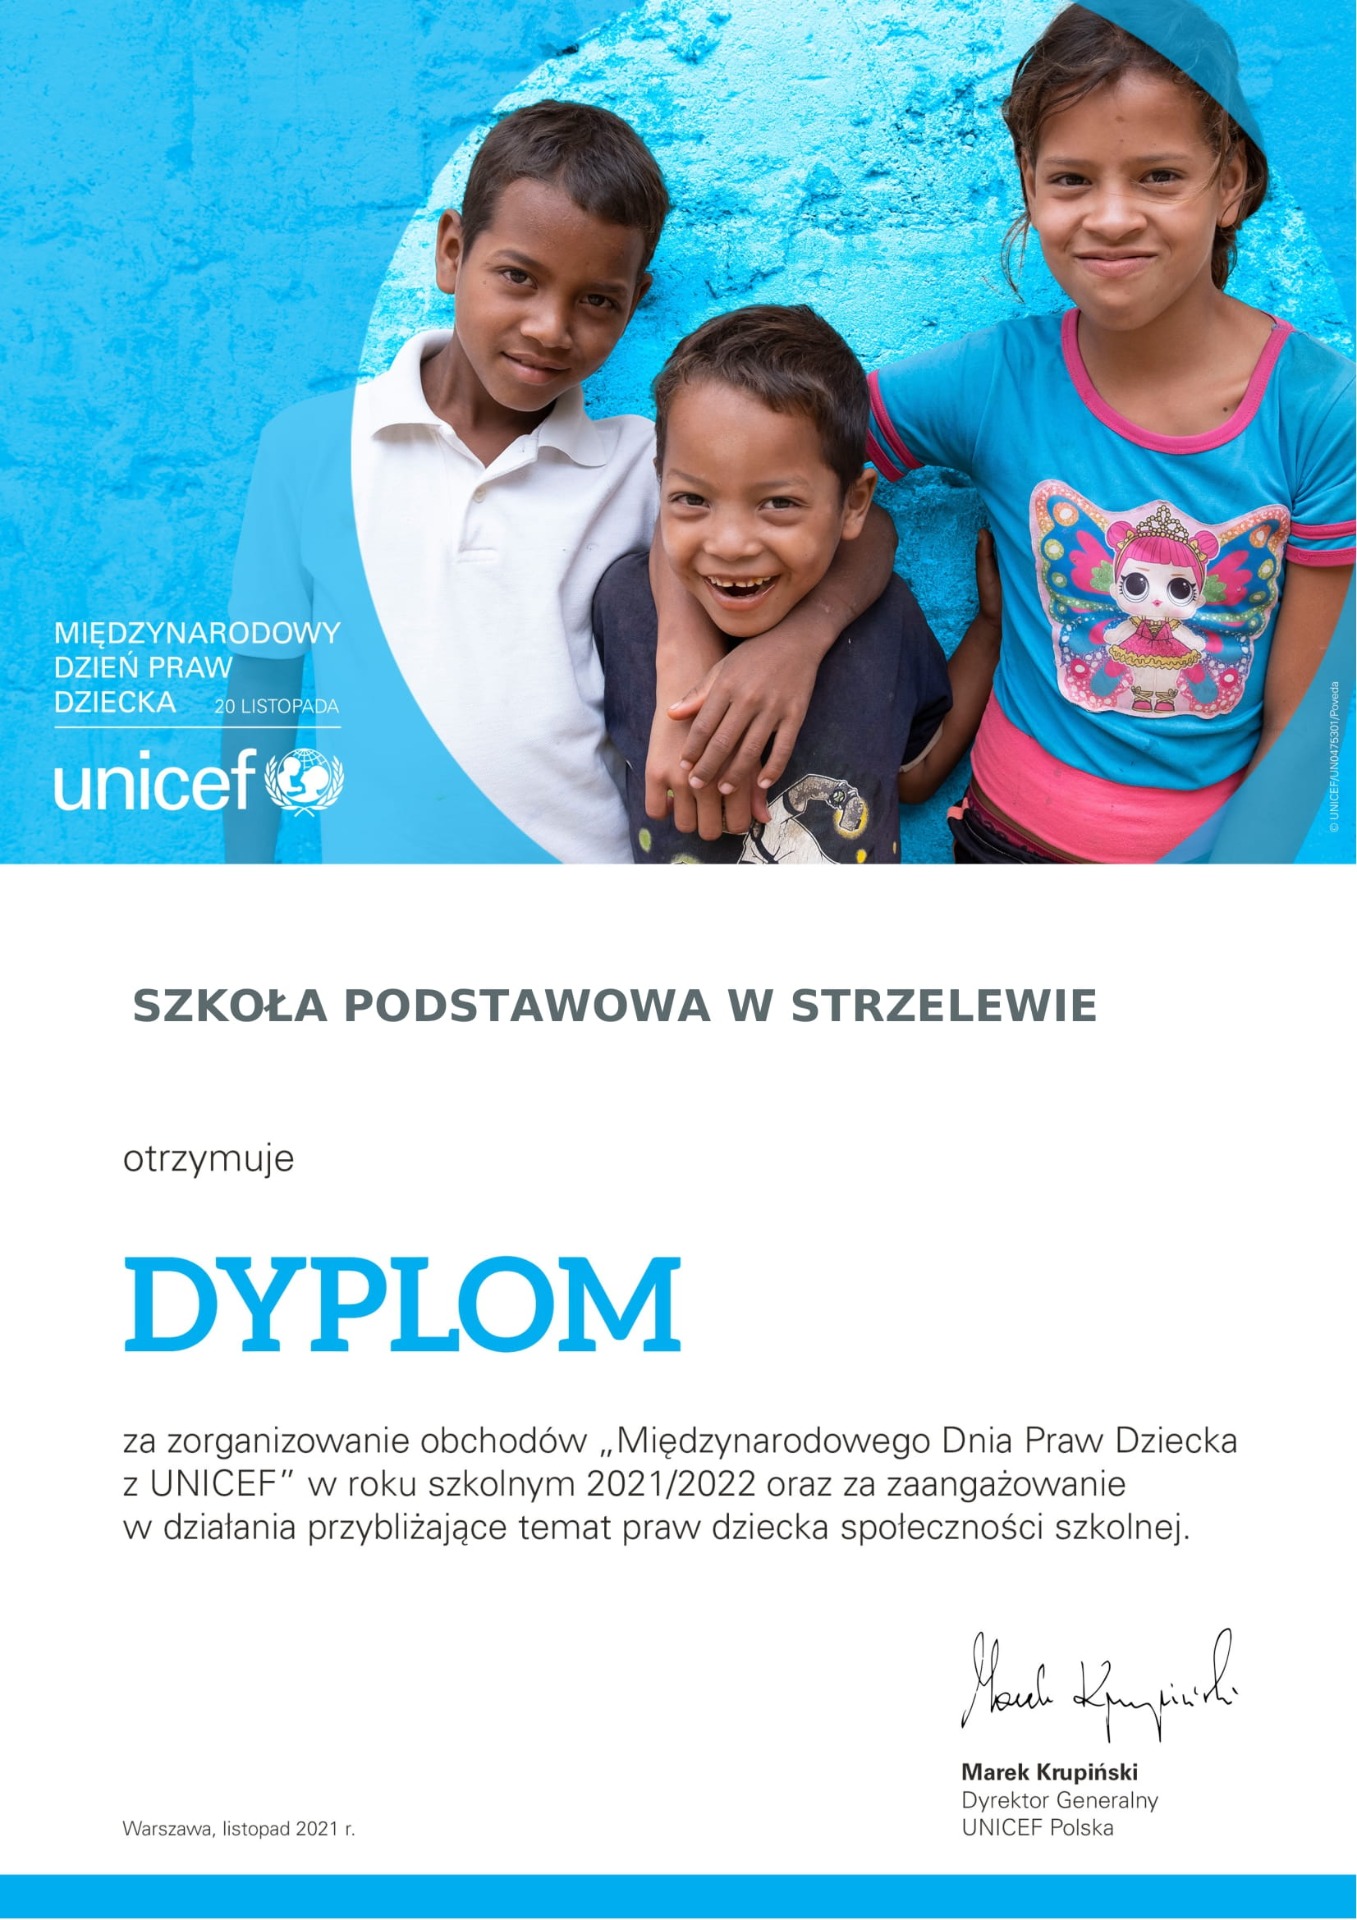 Raport z akcji Międzynarodowy Dzień Praw Dziecka z UNICEF 2021 - Obrazek 1